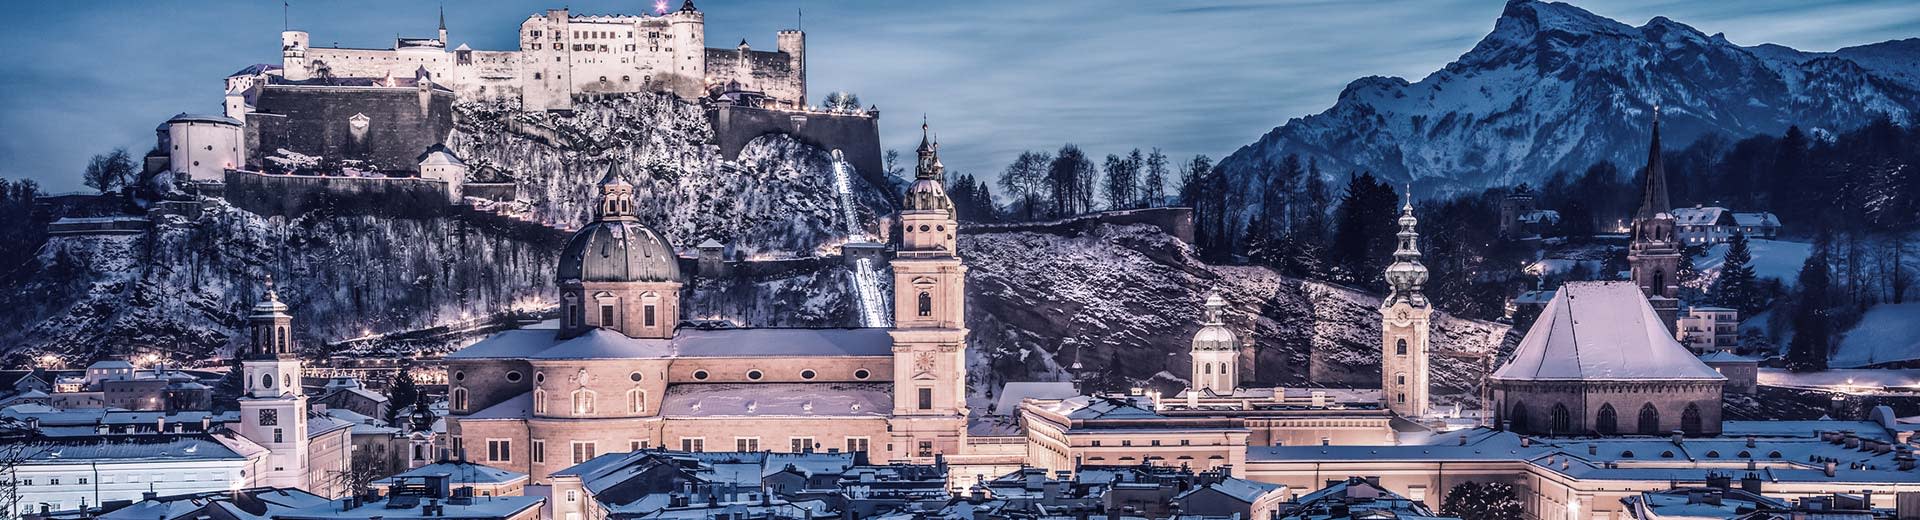 El castillo de Salzburgo ilumina el cielo nocturno en el fondo, mientras que los edificios históricos son visibles en primer plano.